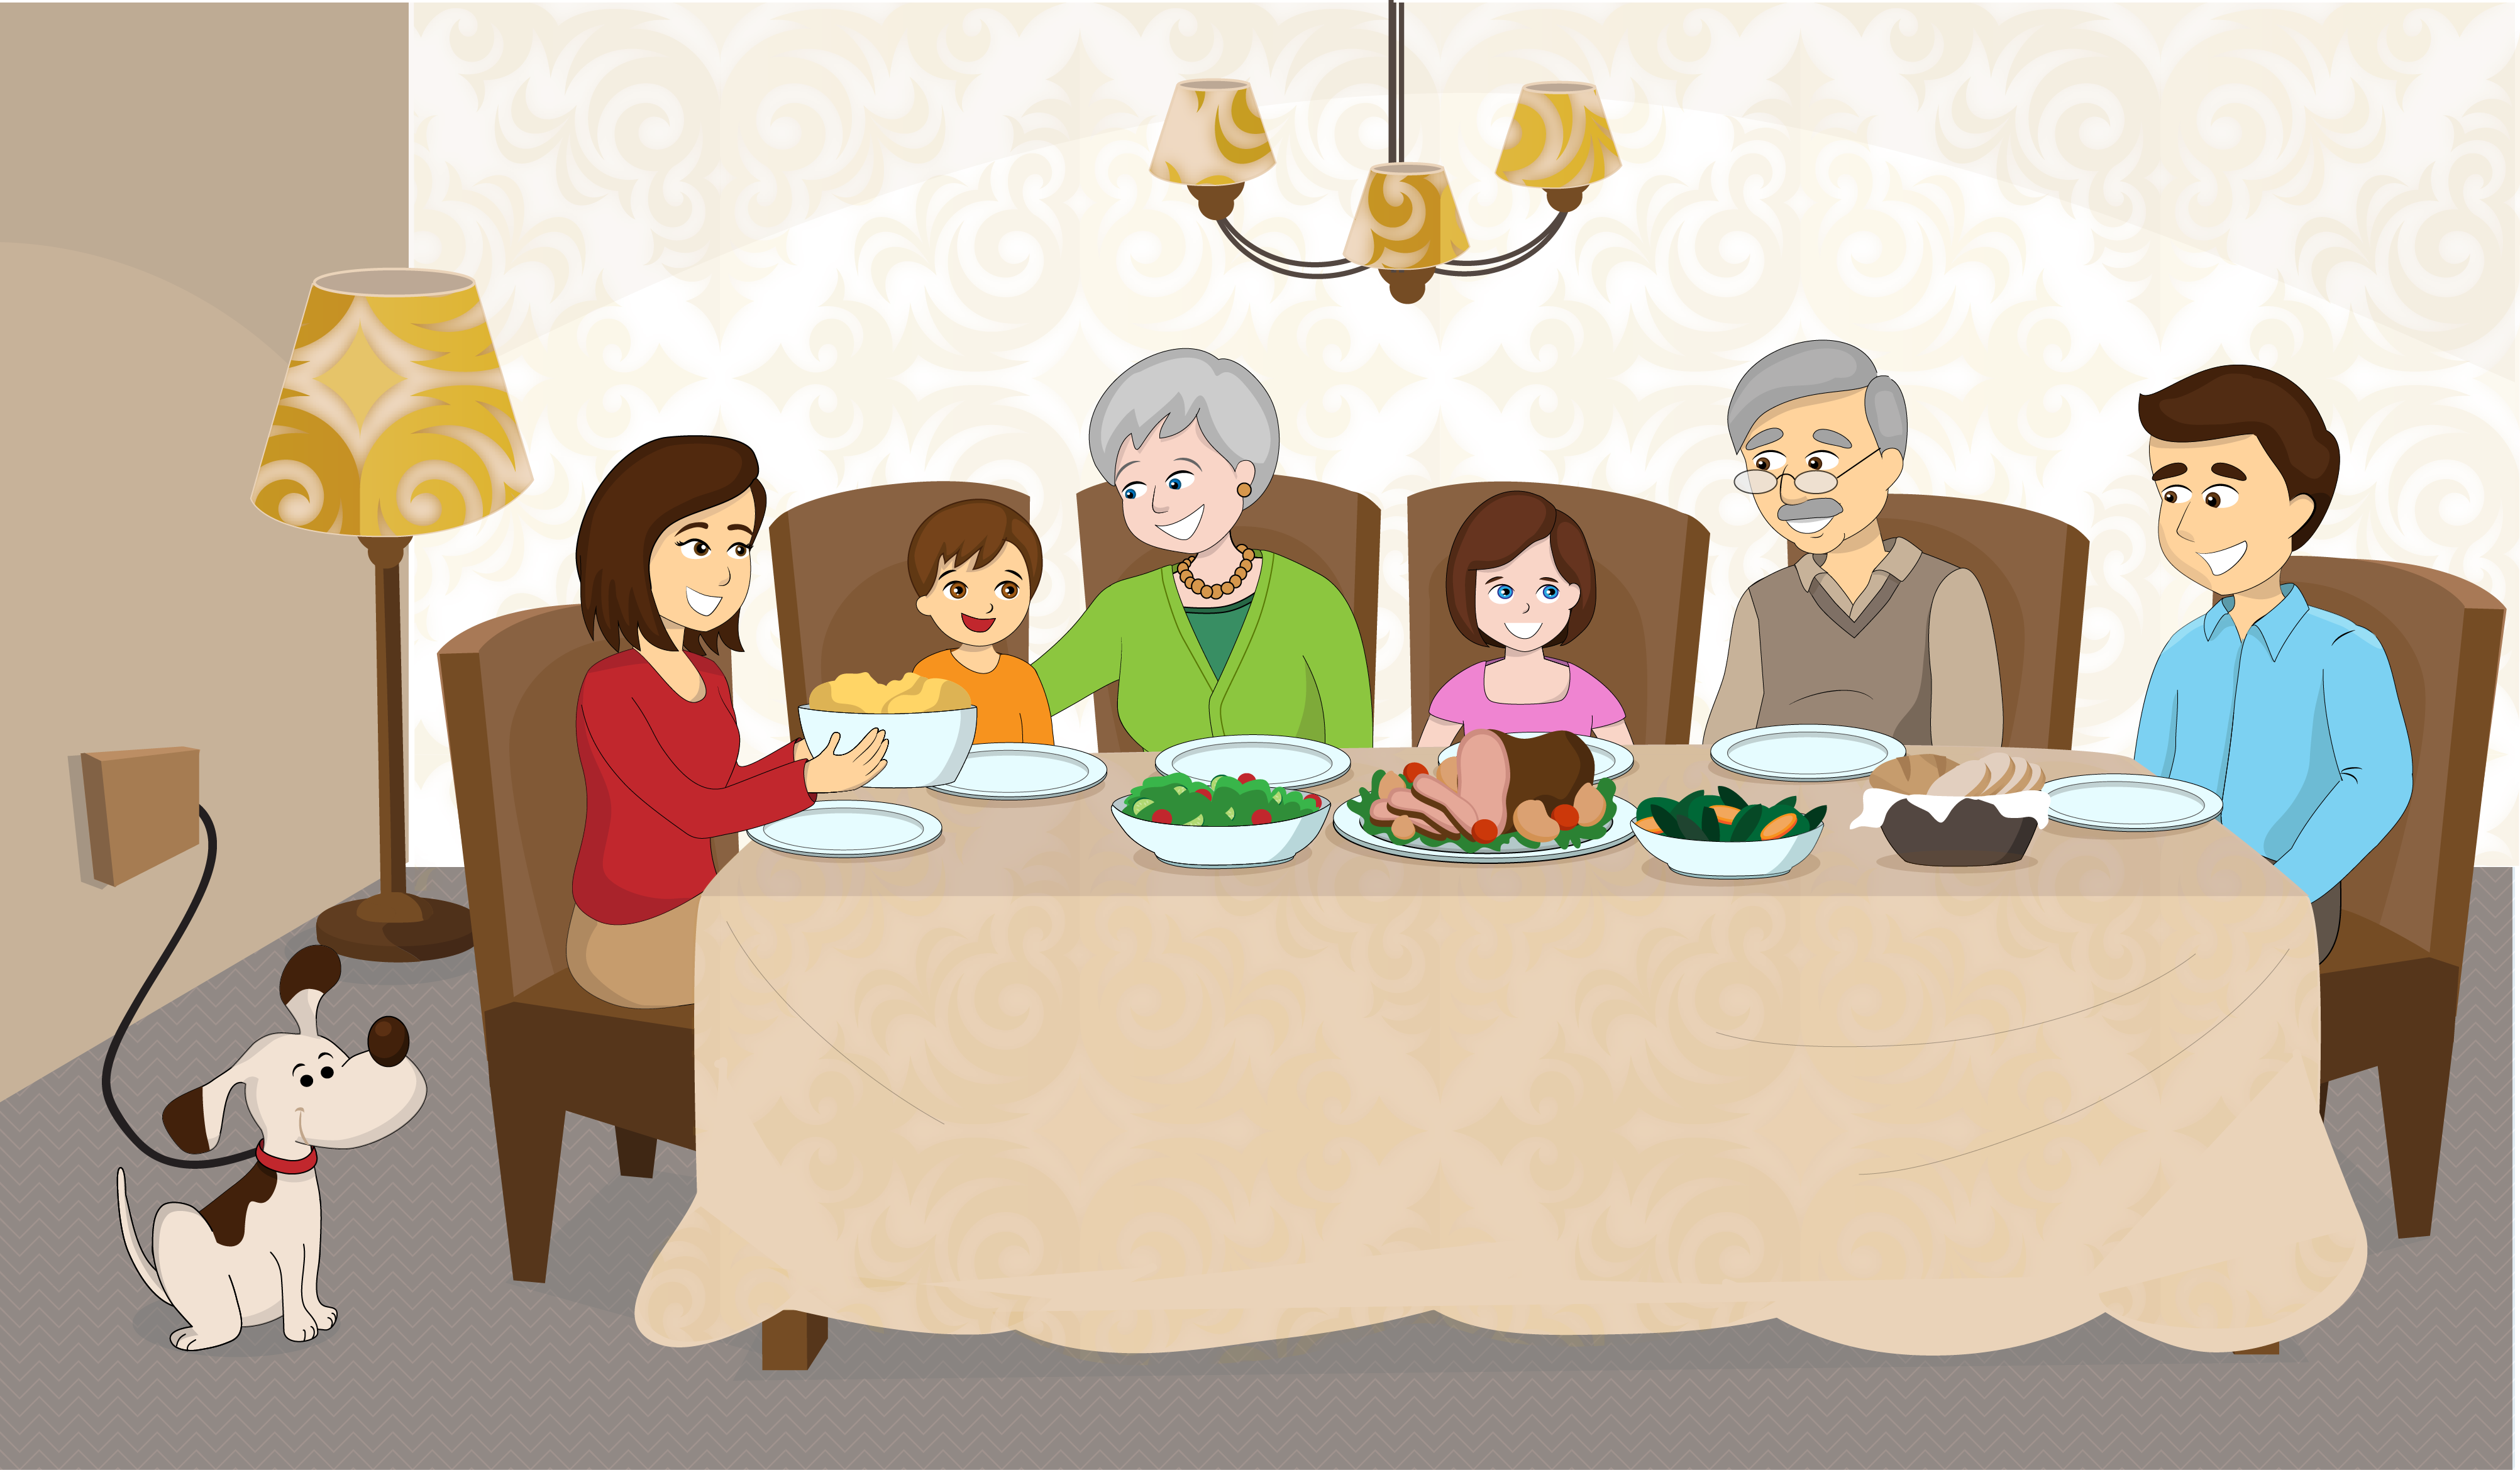 He dine. Семья за столом. Семья за столом вектор. Семья за столом иллюстрация. Семейные традиции рисунок.